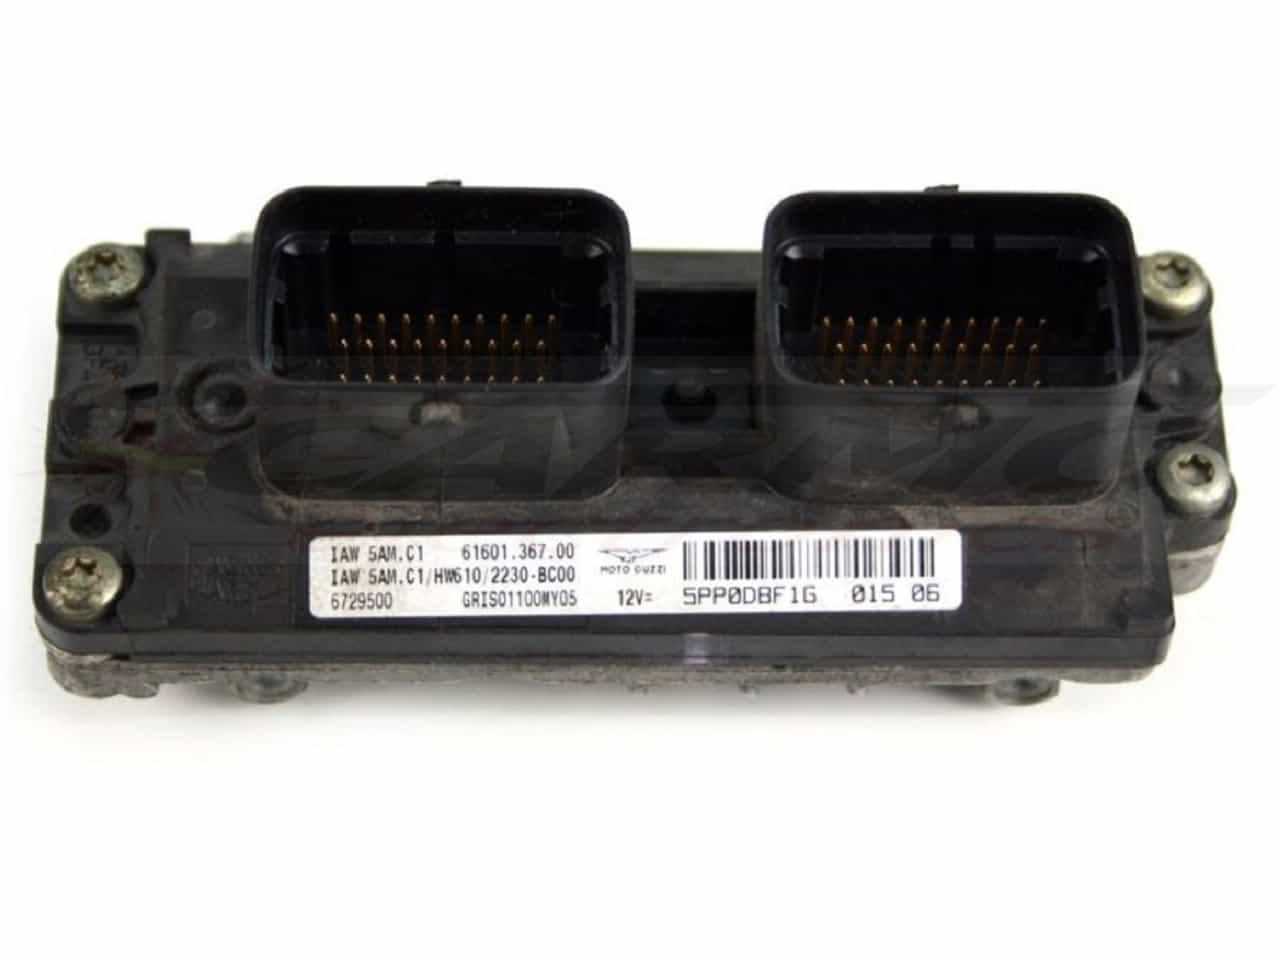 Griso 1100 8V (Magneti Marelli IAW 5AM) ECU ECM CDI controlador de caixa preta de computador